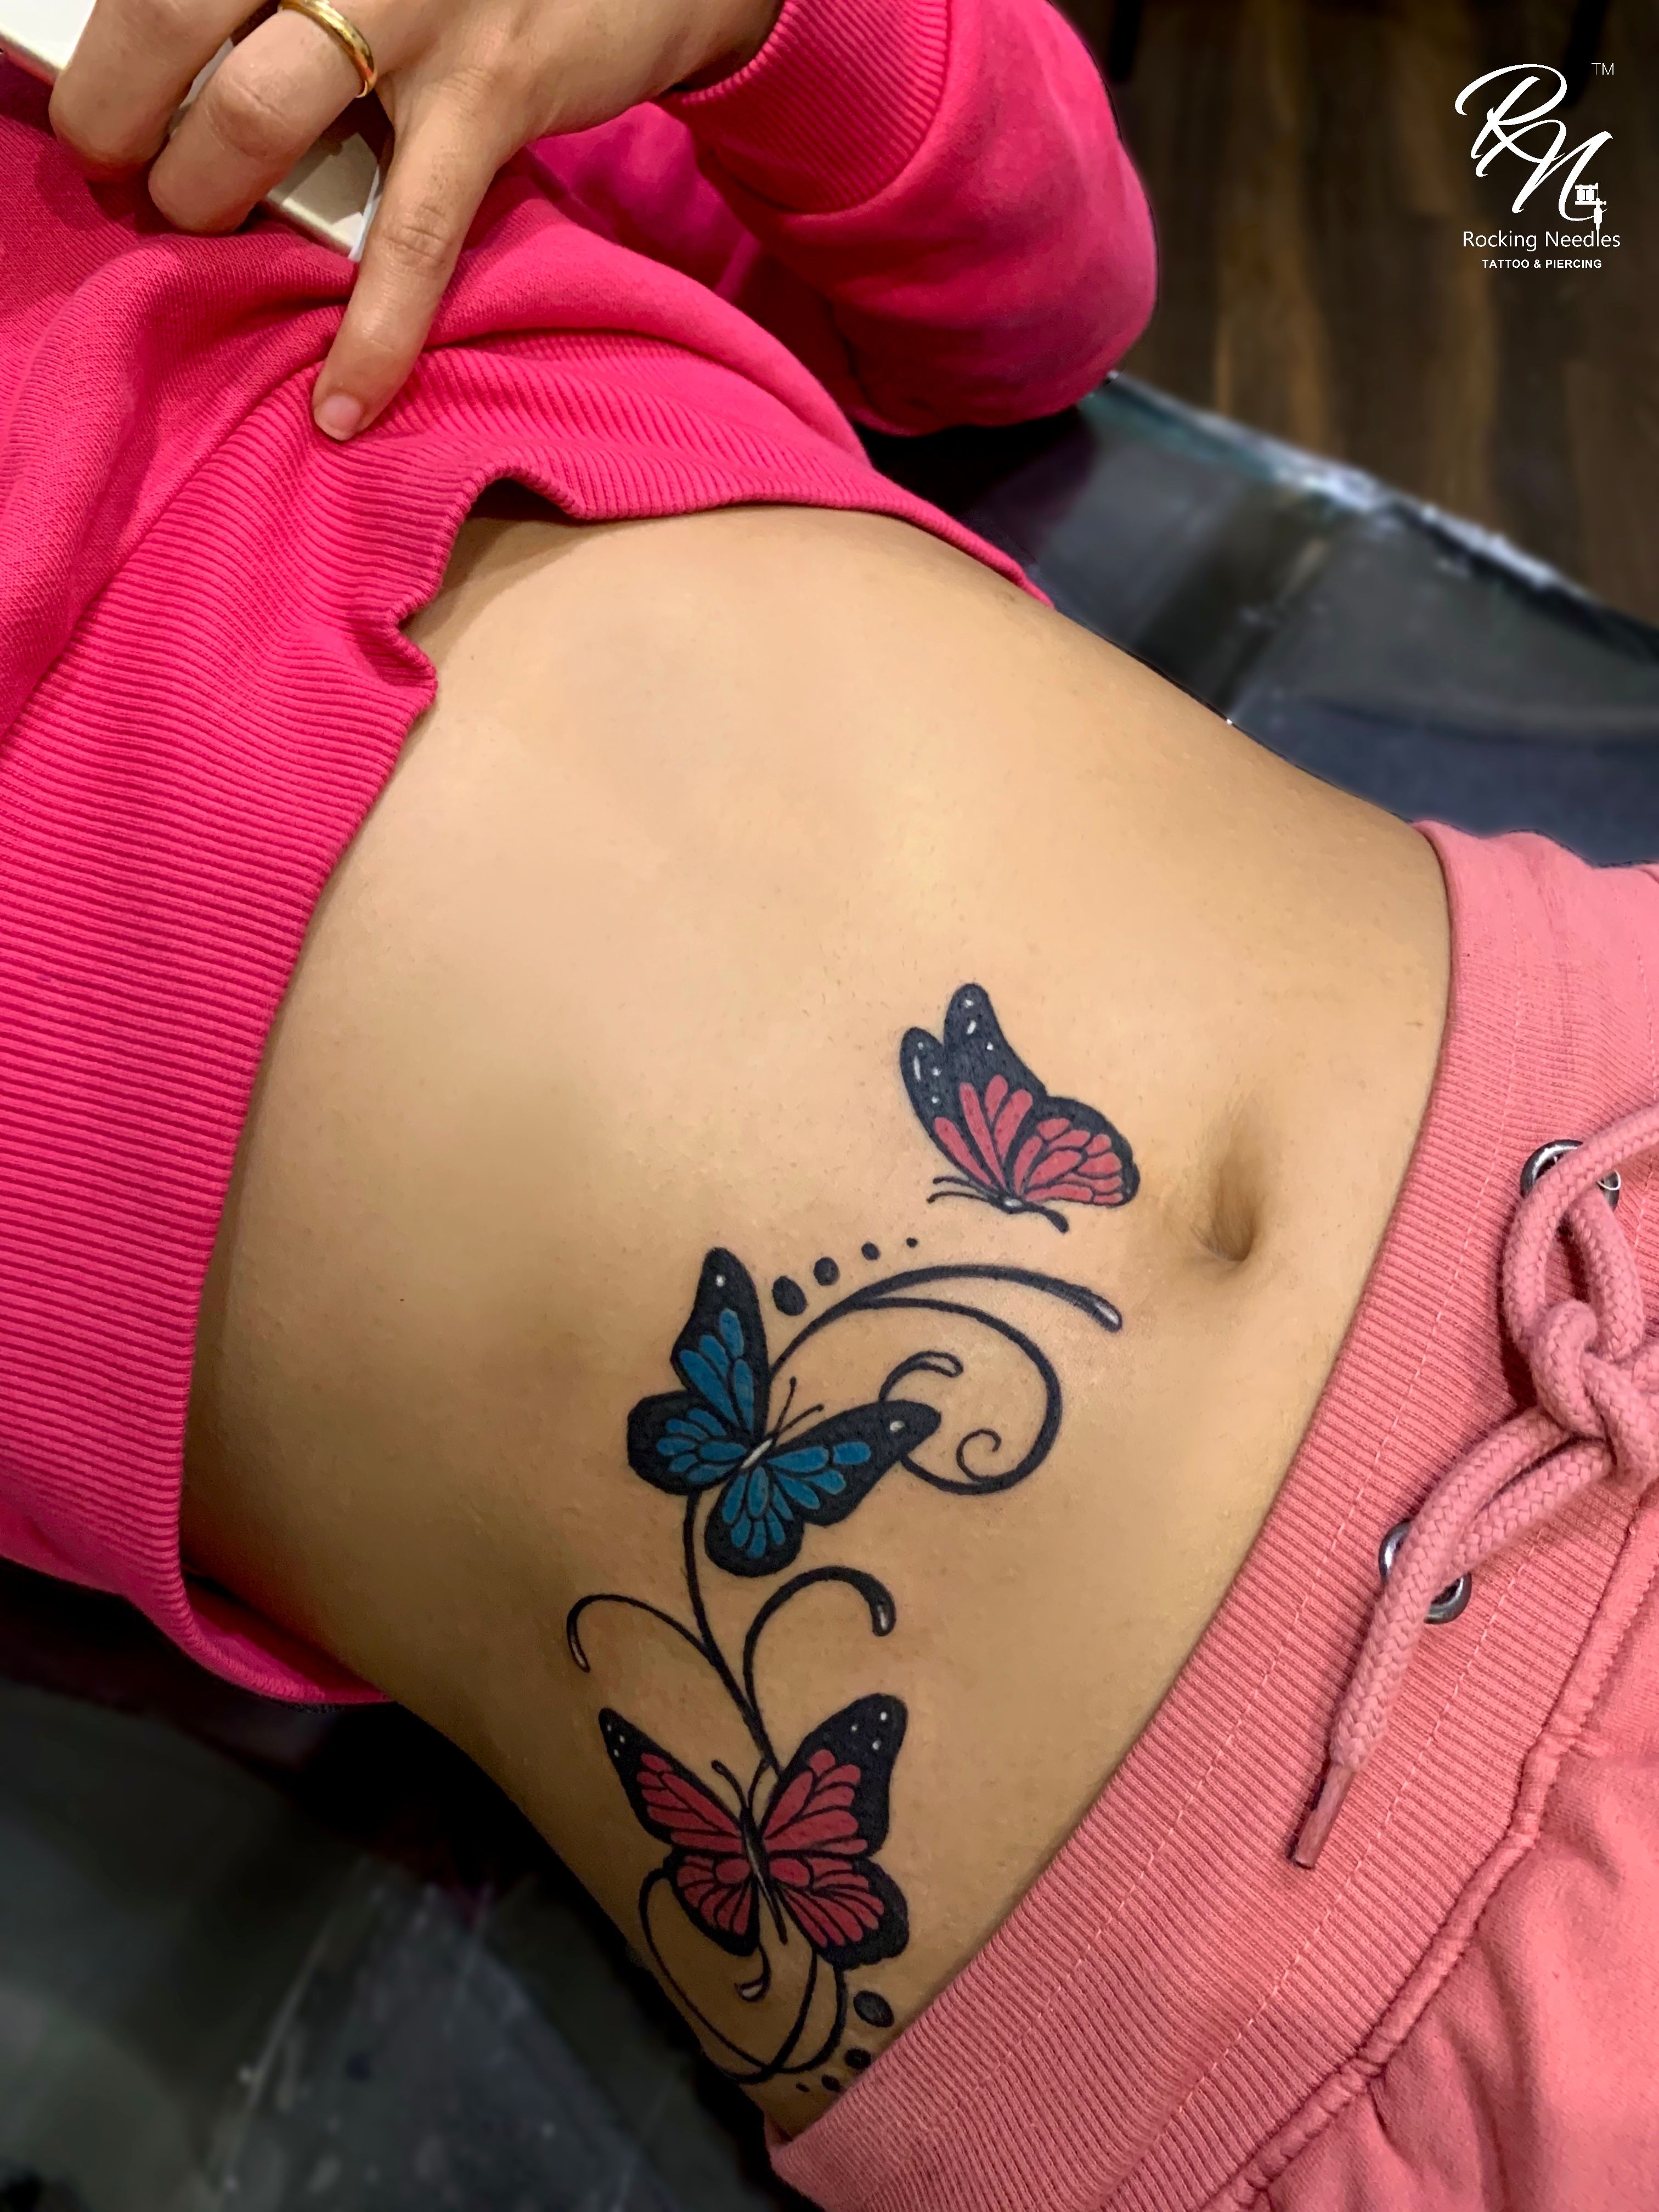 Butterfly Lower Back Tattoo by Enoki Soju by enokisoju on DeviantArt